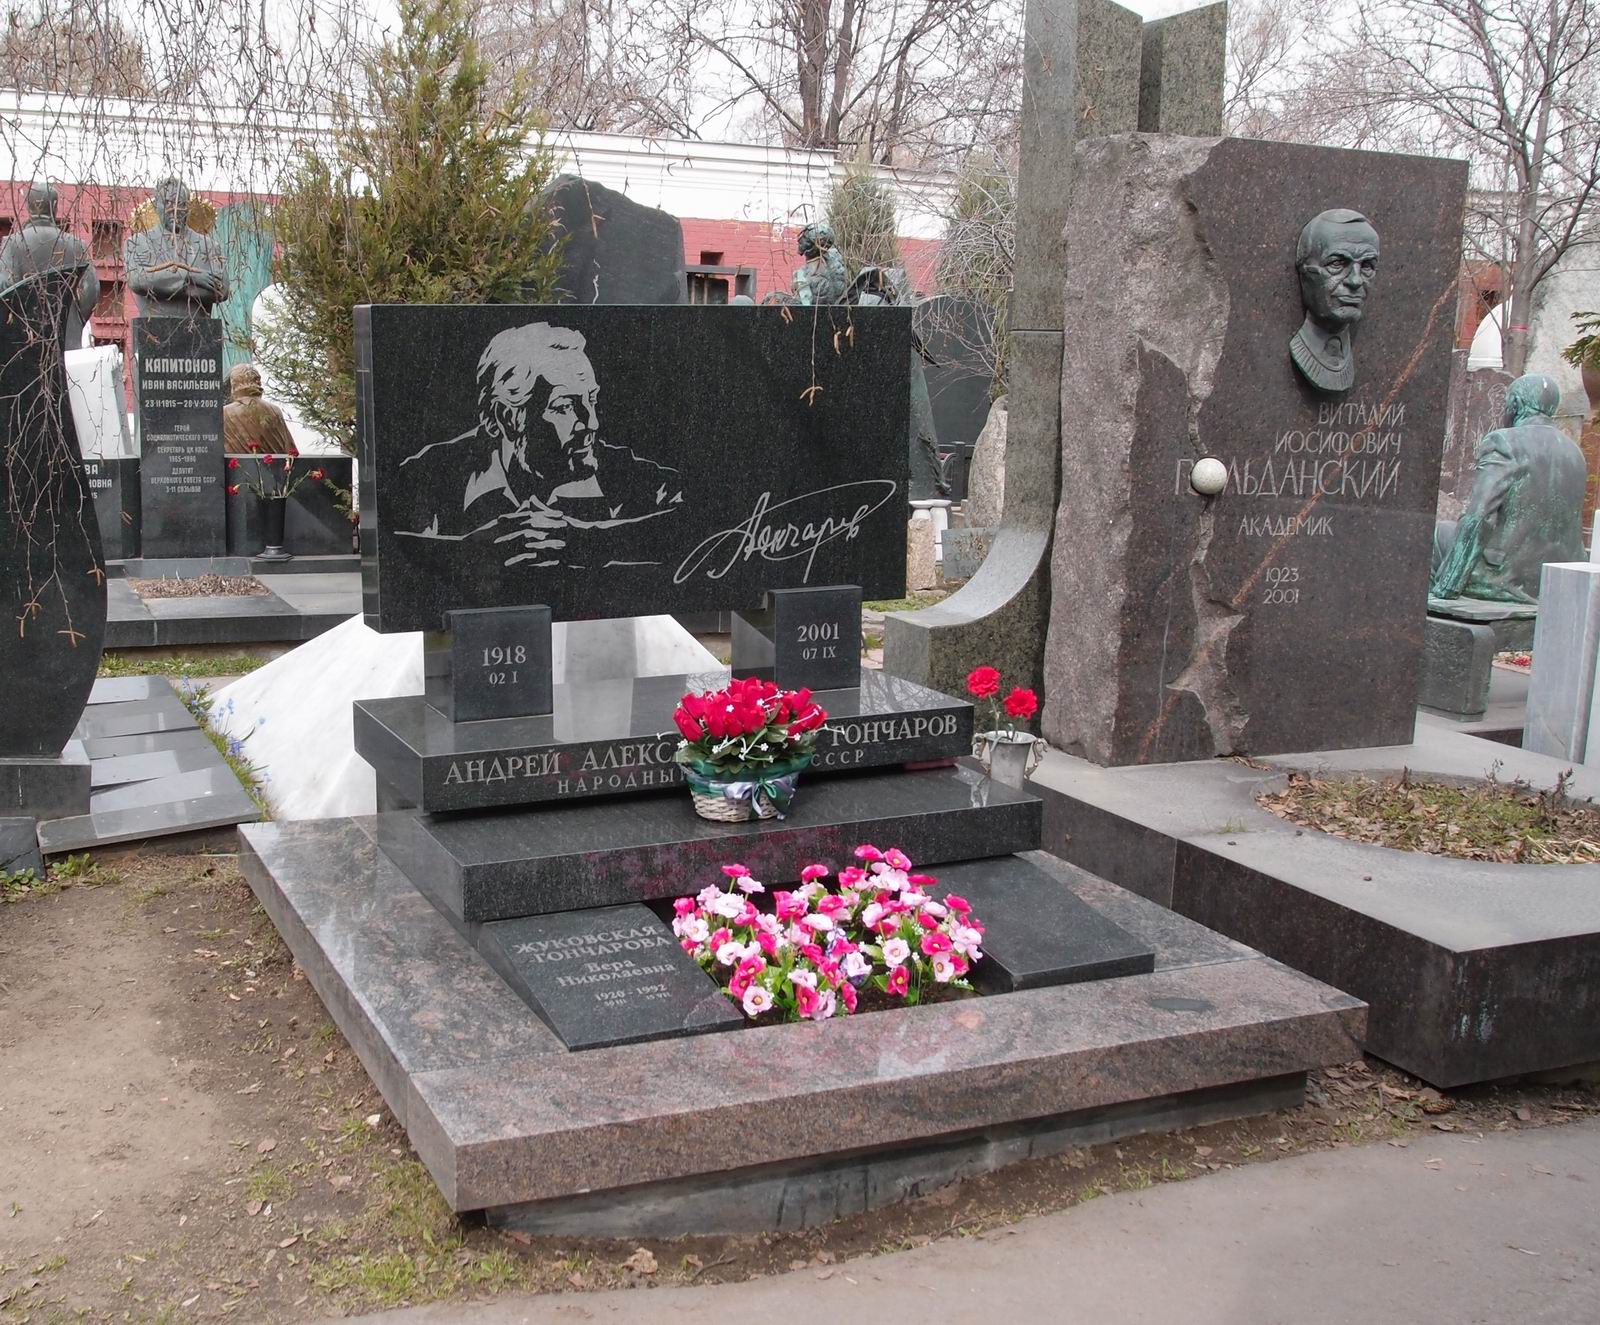 Памятник на могиле Гончарова А.А. (1918–2001), худ. А.Ованесян, арх. Е.Копелиович, на Новодевичьем кладбище (10–5–20).